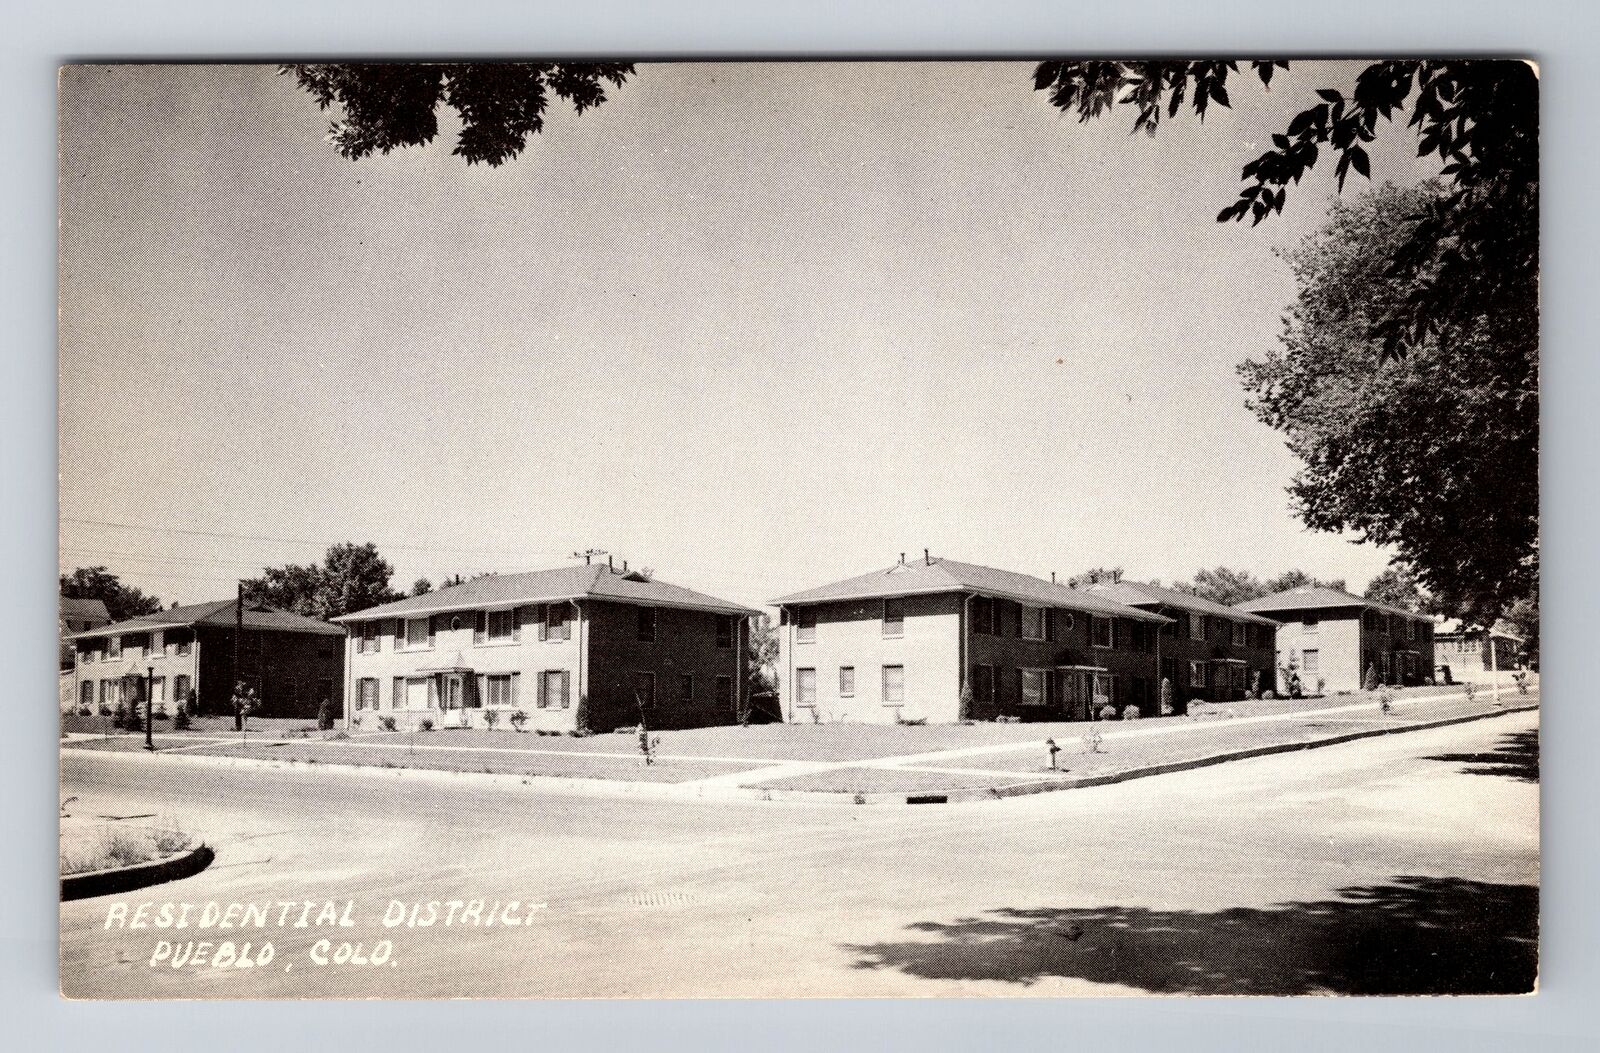 Pueblo Co-Colorado, Residential District, Antique Vintage Souvenir Postcard